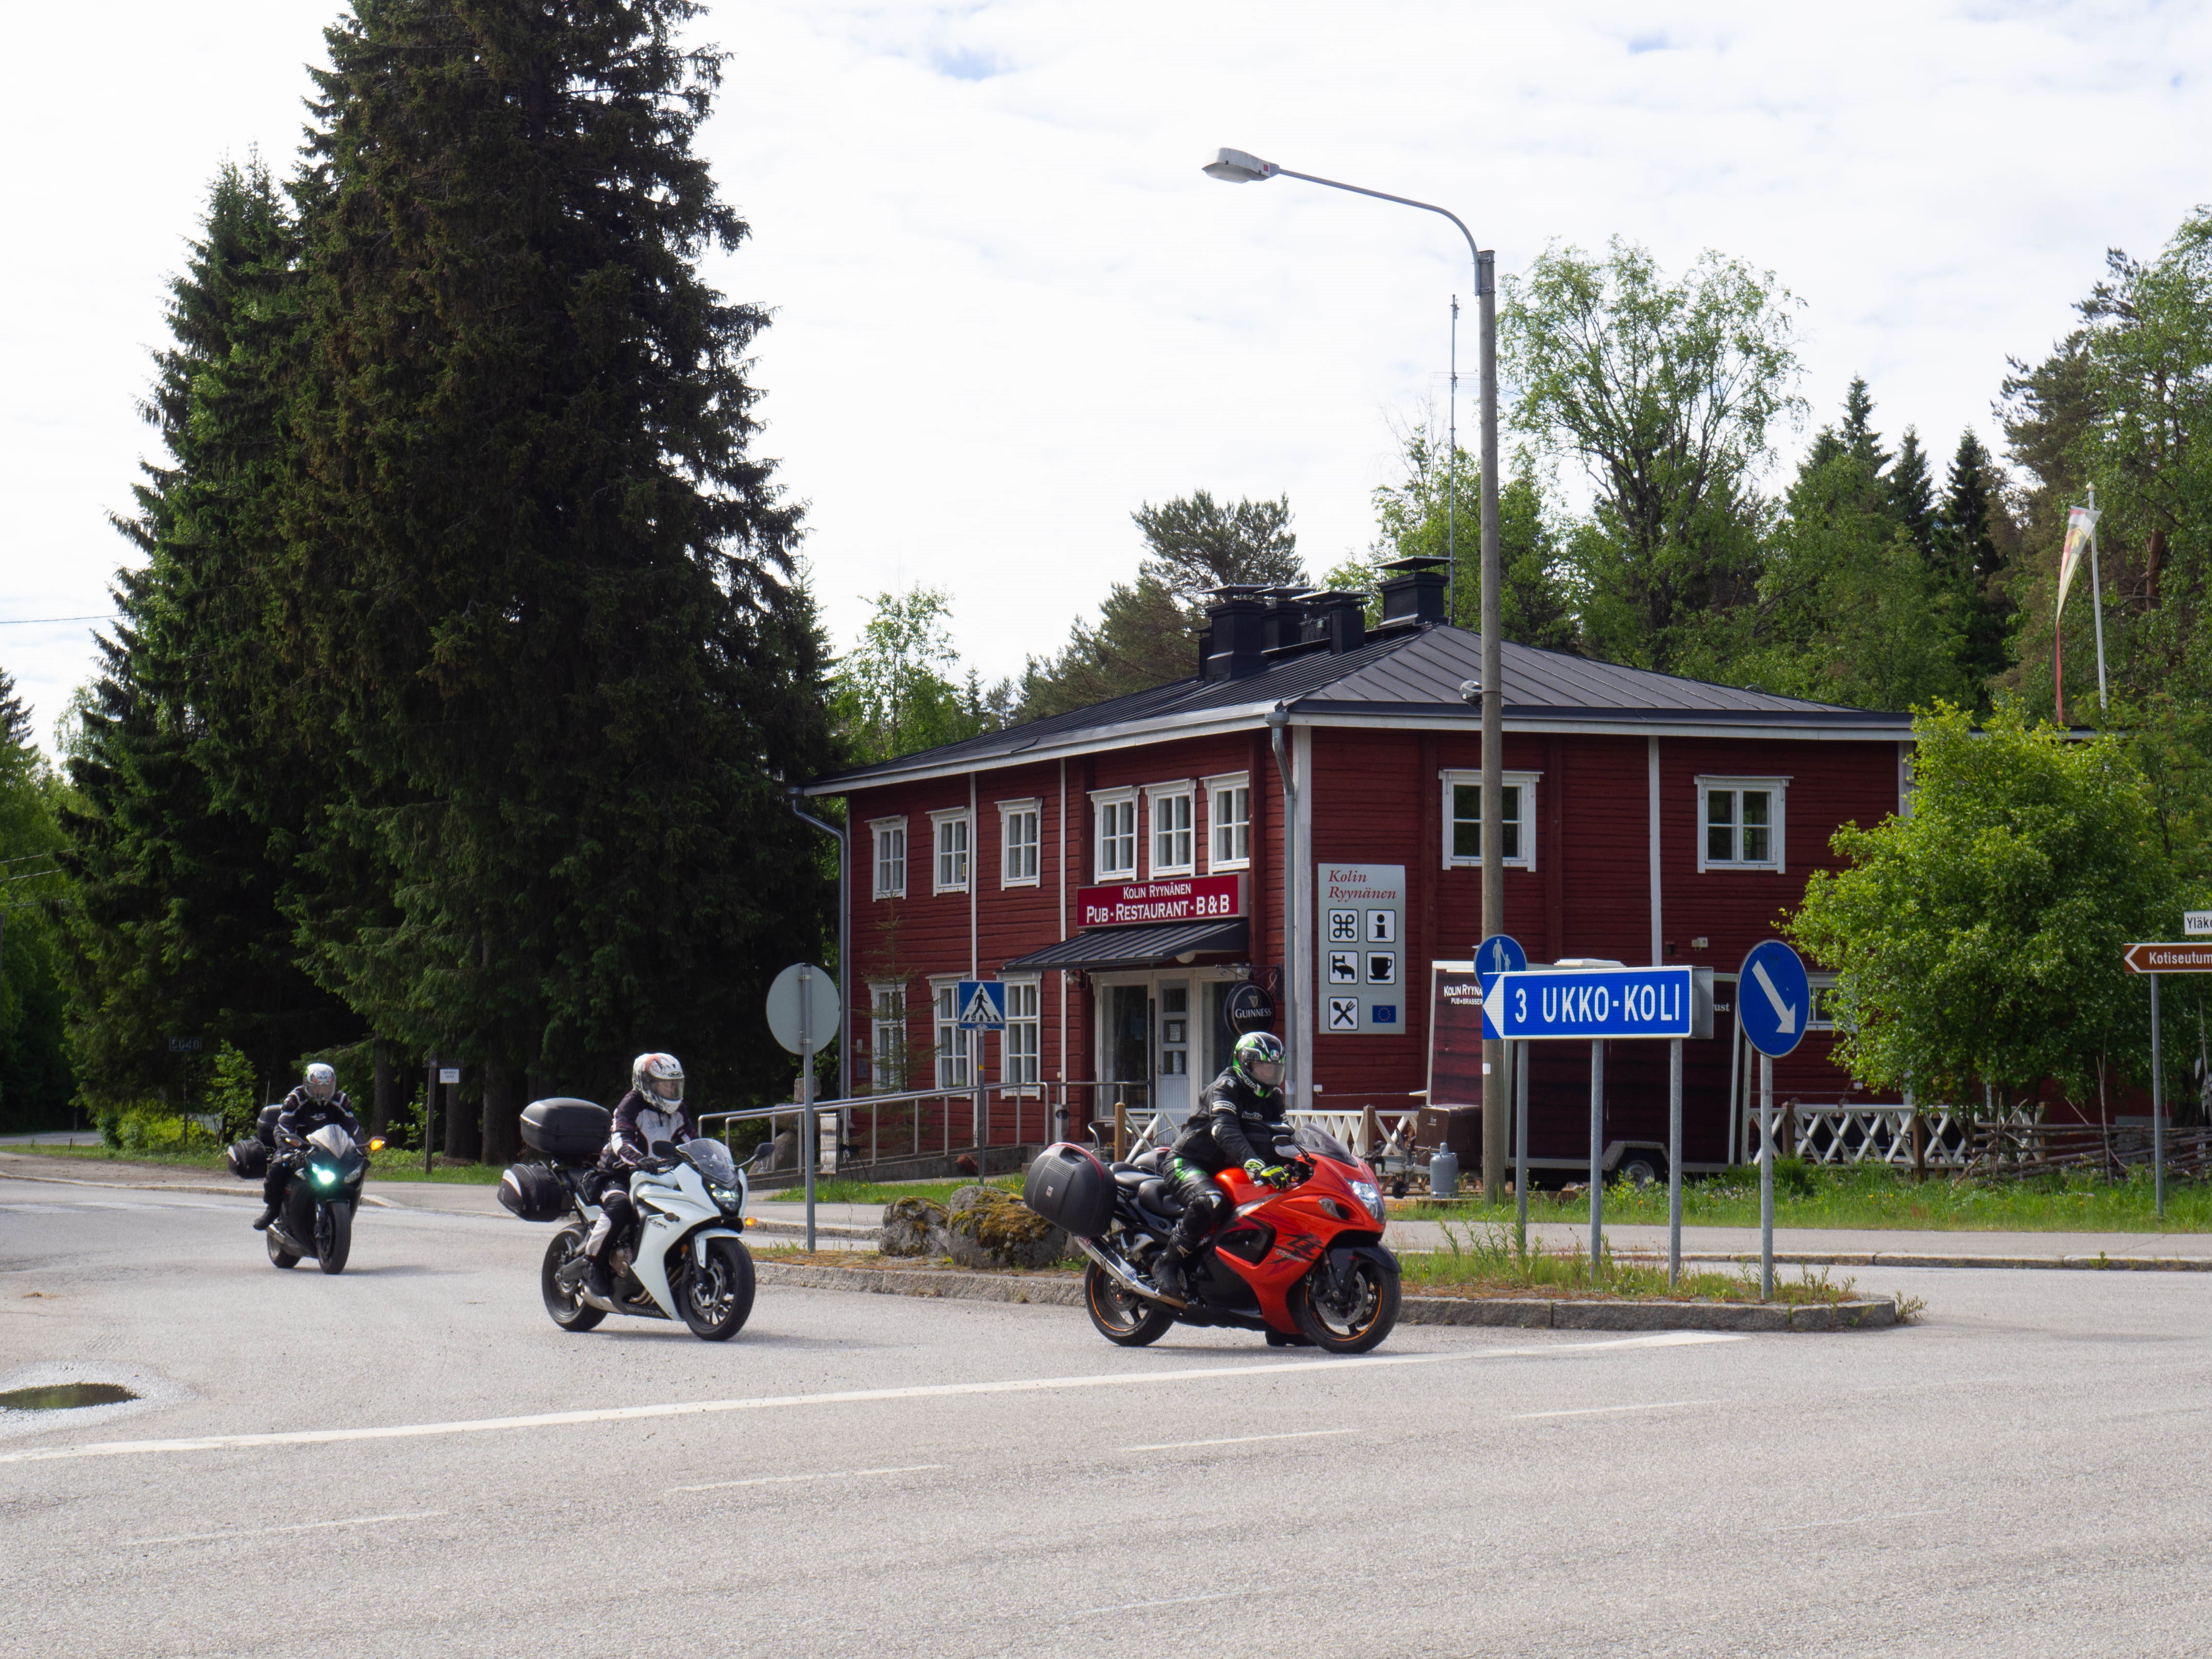 Kolme moottoripyöräilijää risteyksessä. Tienviitassa teksti Ylä-Koli 3. Taustalla iso punainen hirsirakennus.